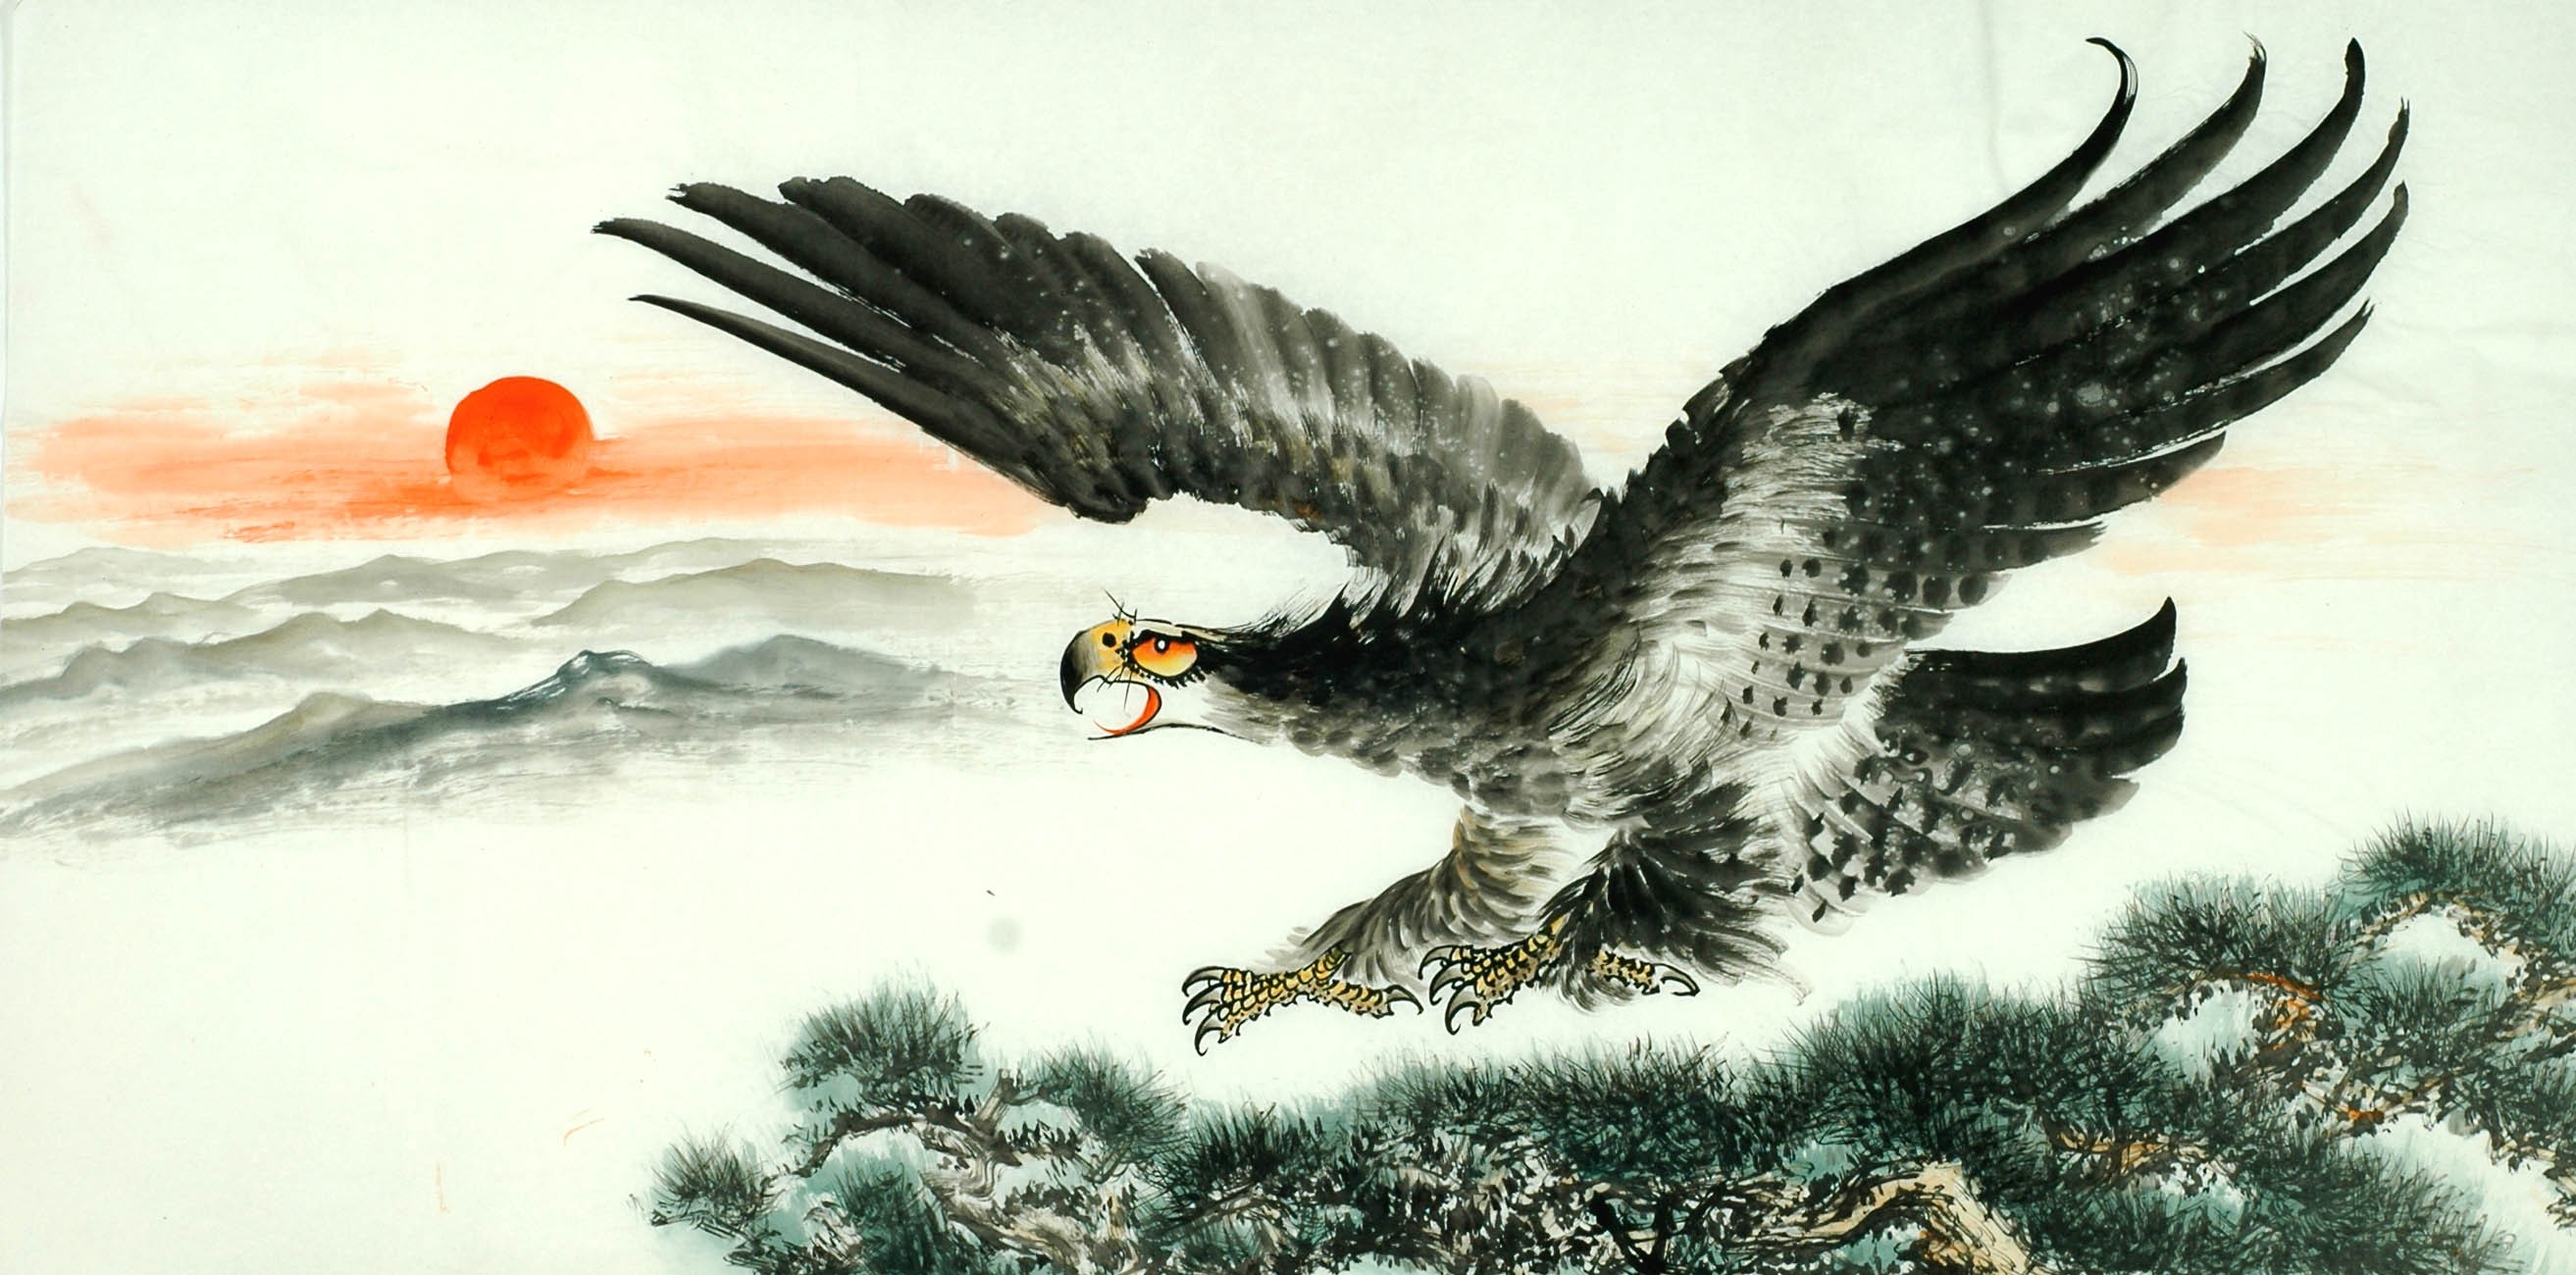 Chinese Eagle Painting - CNAG011294